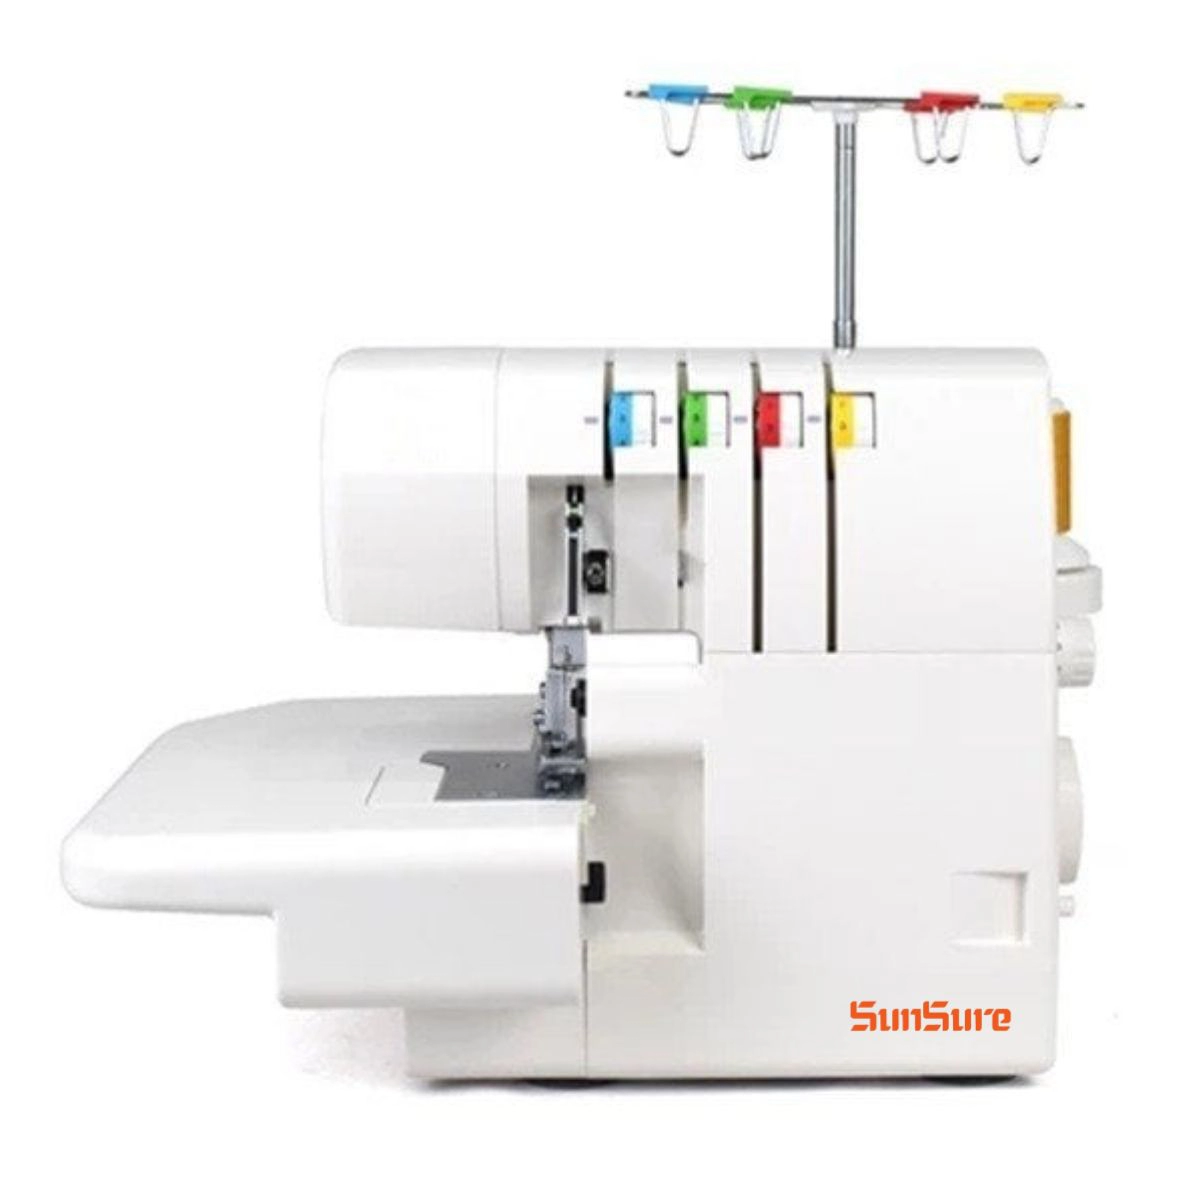 ss 703 1 Máquina de coser Overlock Familiar 4 hilos 703 Sunsure